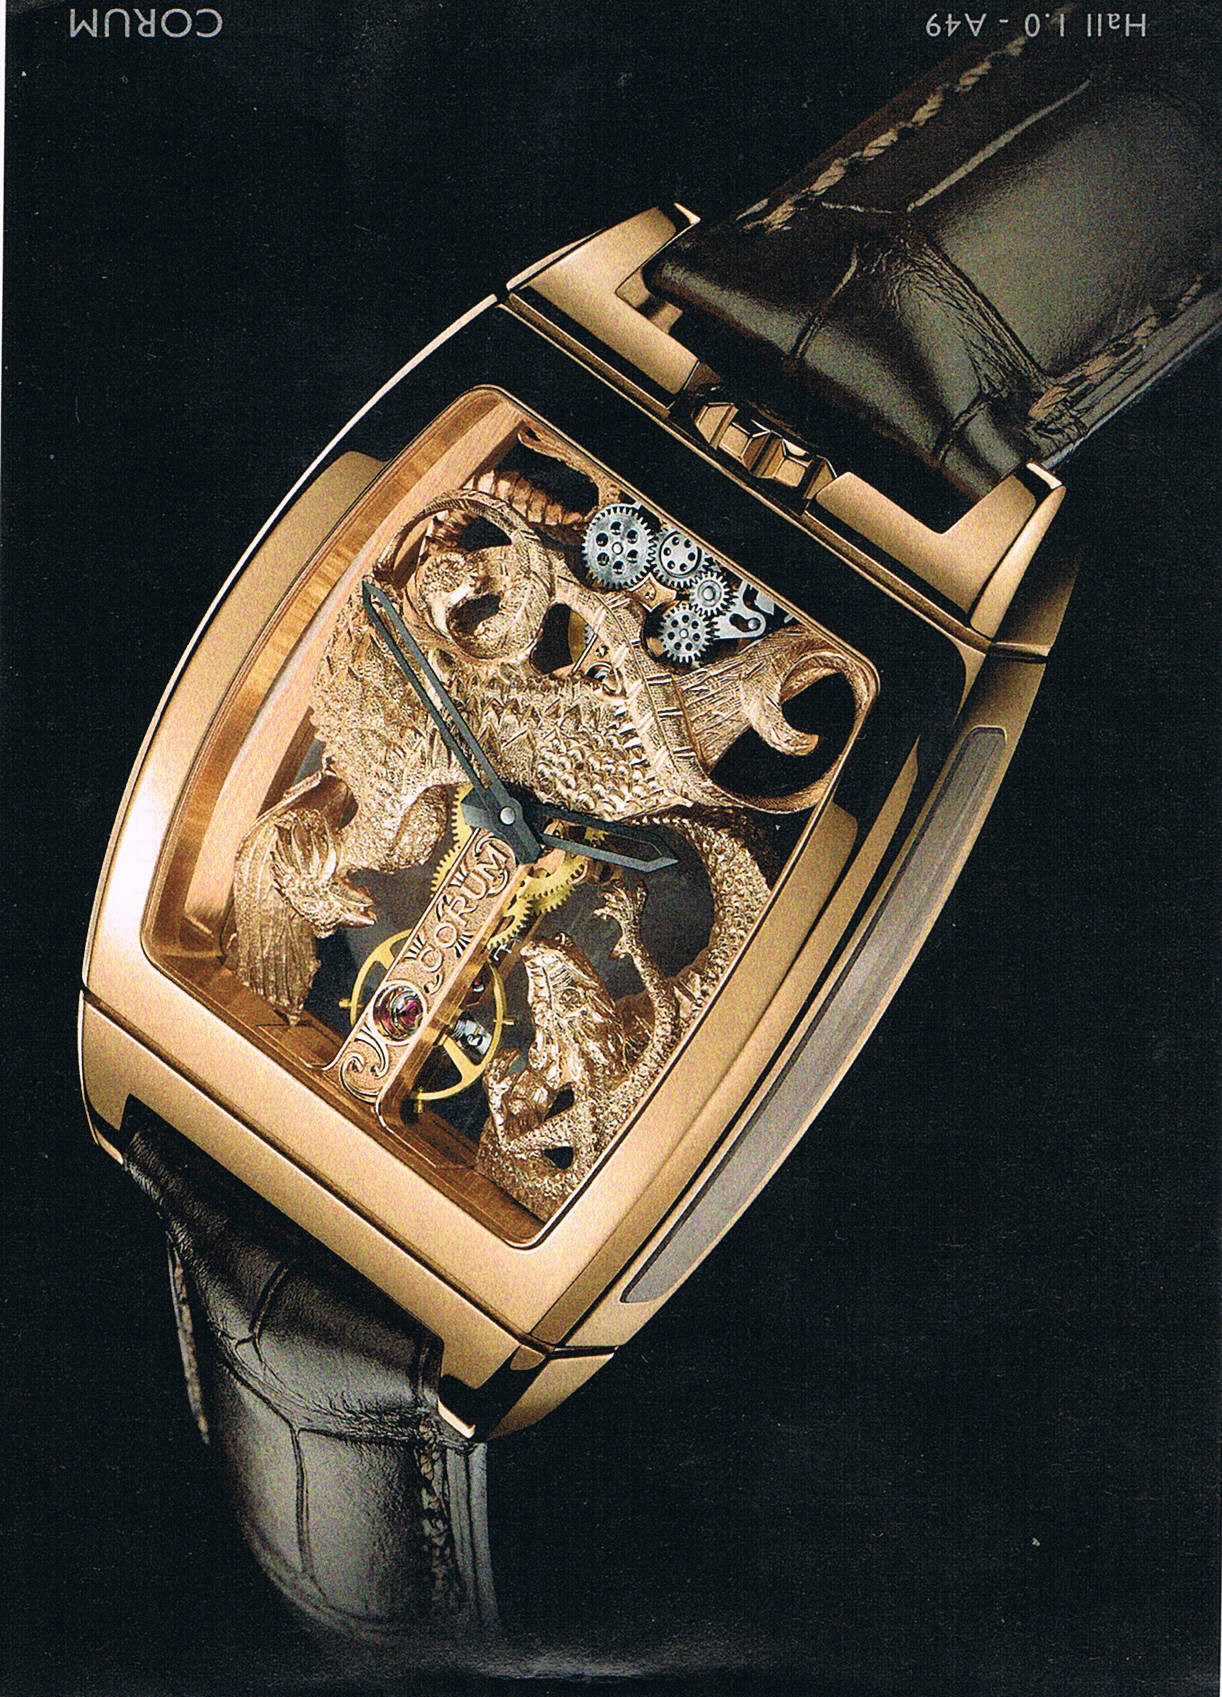 Uhrenkreation von Corum mit Blick ins Innere, ein kunstvoll bearbeitetes Uhrwerk